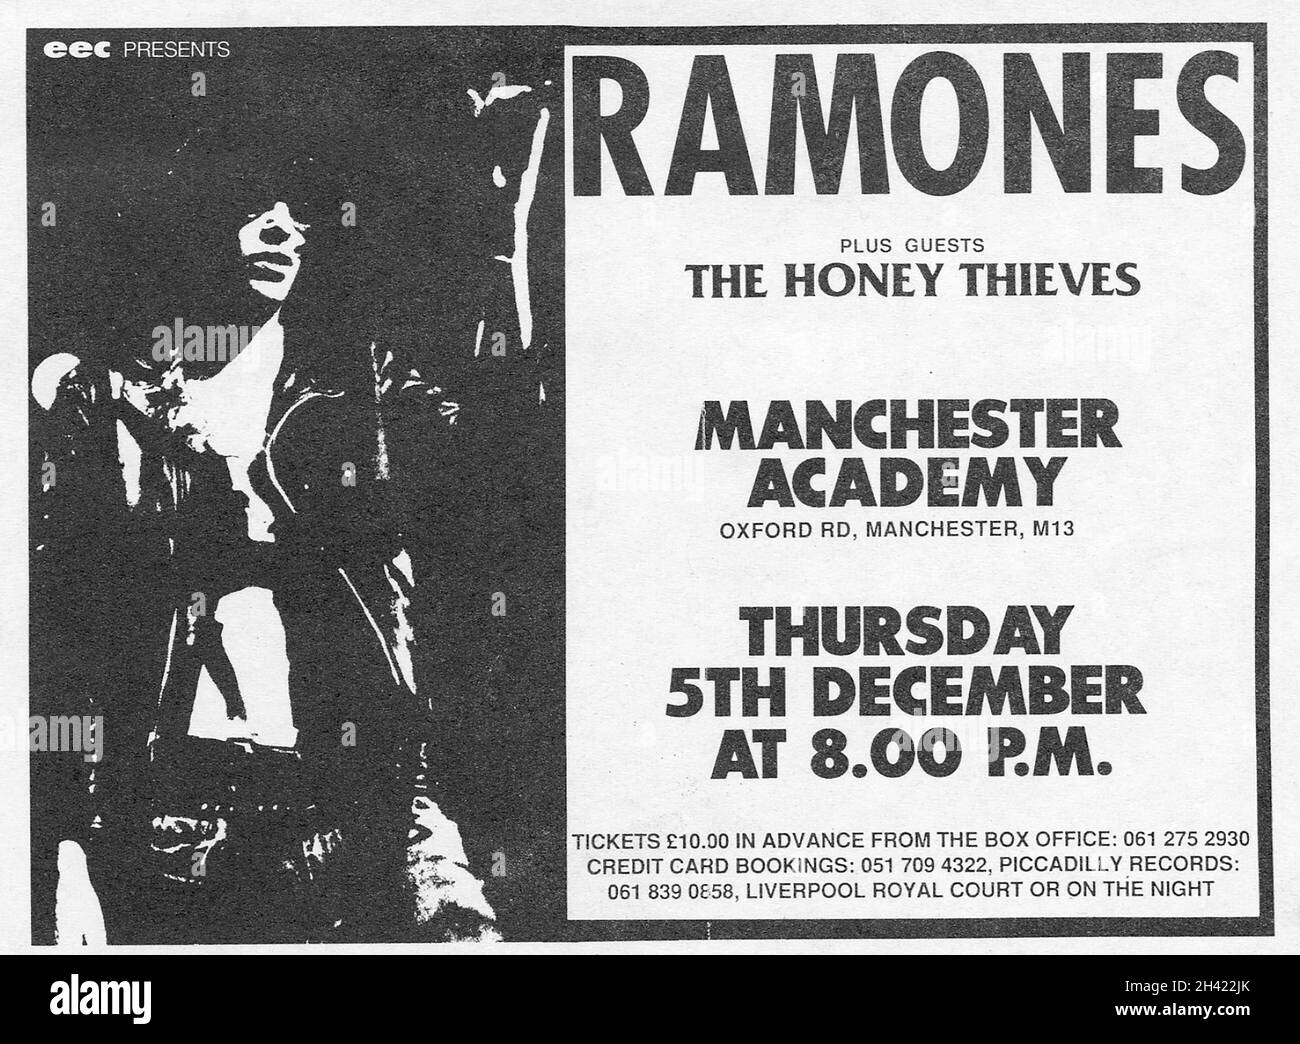 The Ramones Original UK Concert Flyer für eine Show in der Manchester Academy, Oxford Road, Manchester, am 5. Dezember. 1985. Litho gedruckt in schwarz auf weißem, mattem Papier. Diese wurden in lokalen Plattenläden zur Werbung für die Show mit Tickets zu einem Preis von 10 £ausgeteilt. Support Band waren The Honey Thieves. Stockfoto